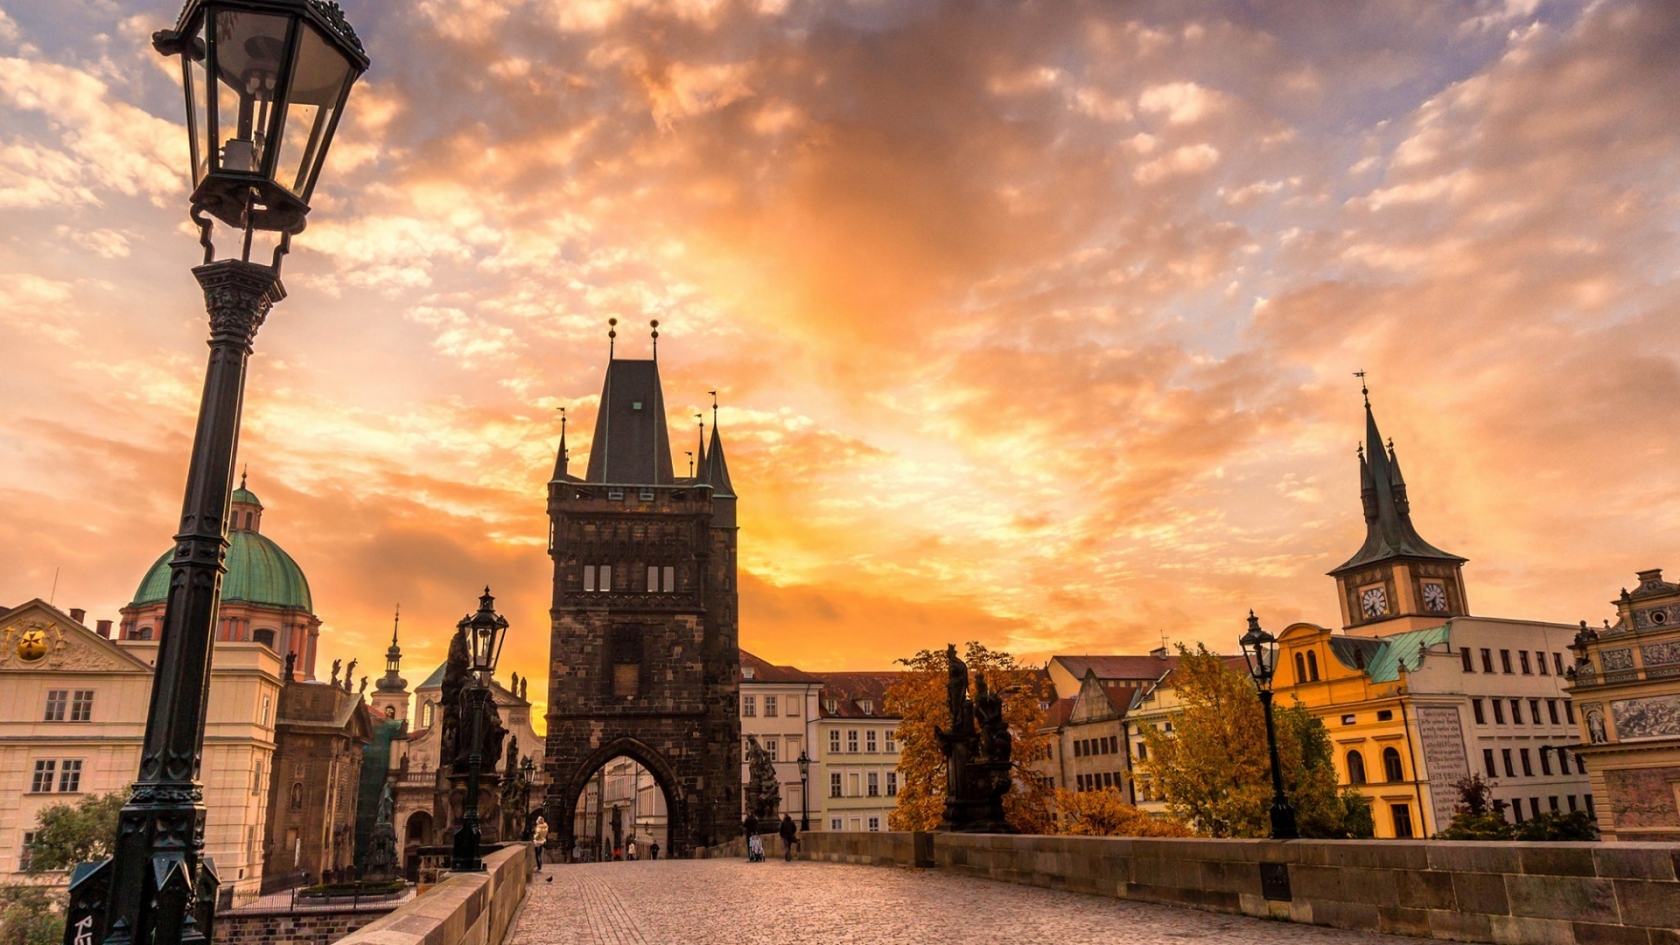 Sunset in Prague for 1680 x 945 HDTV resolution